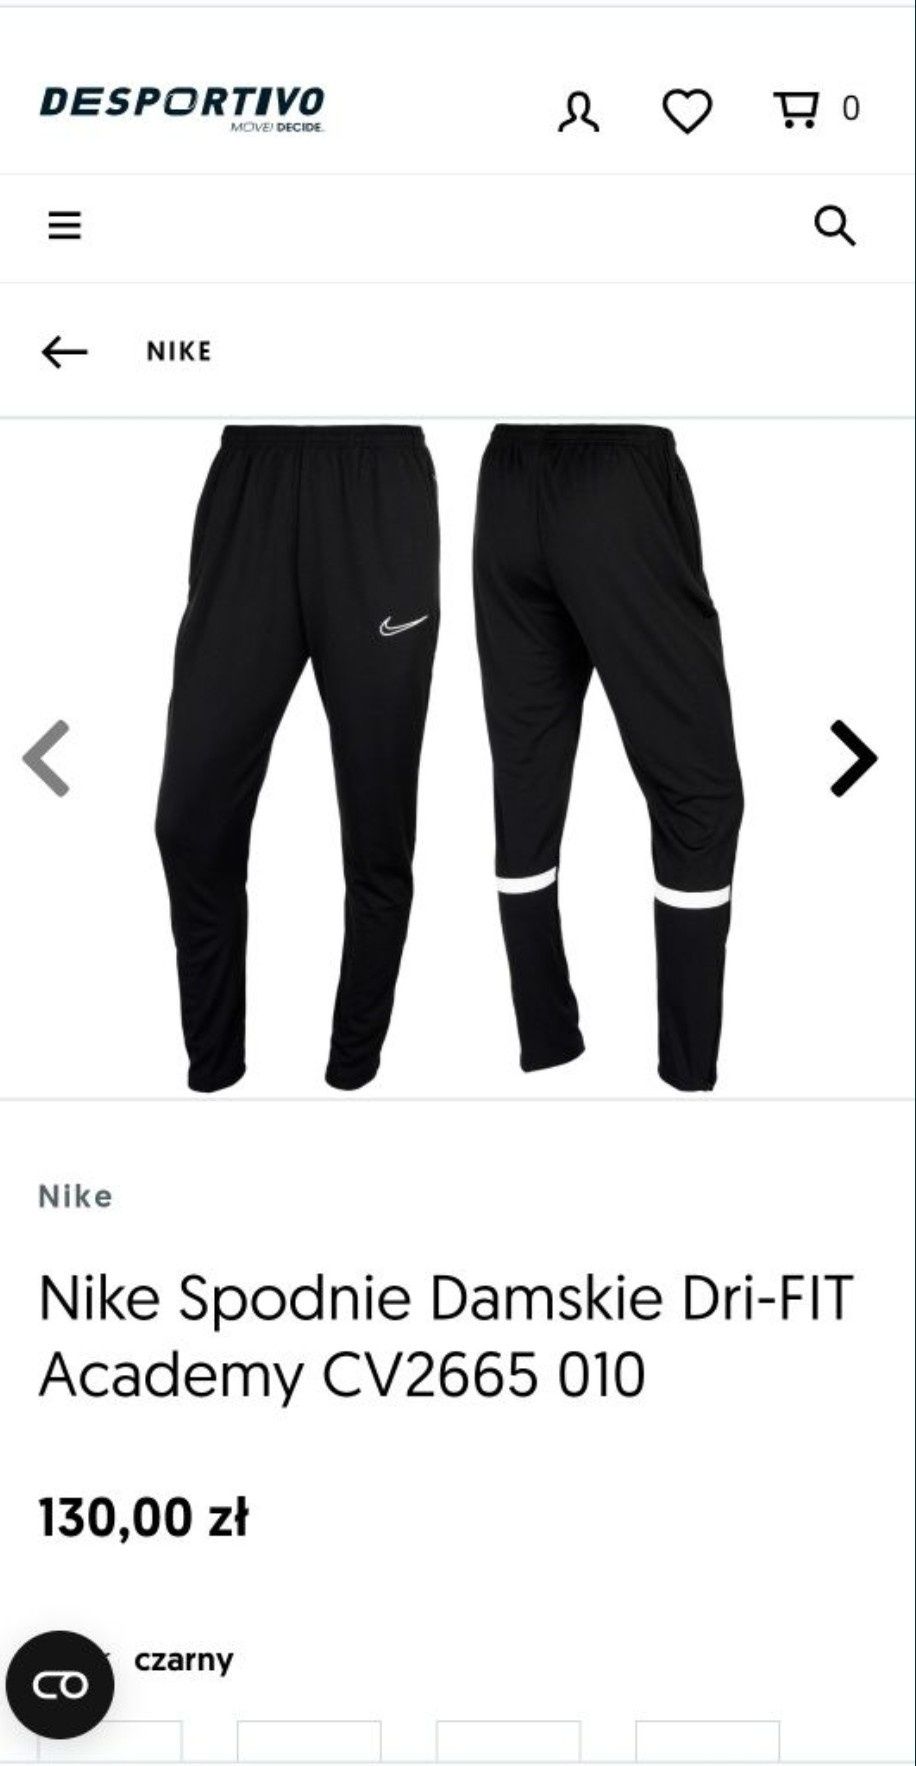 Nike_Spodnie dresowe Damskie_Dri Fit_M